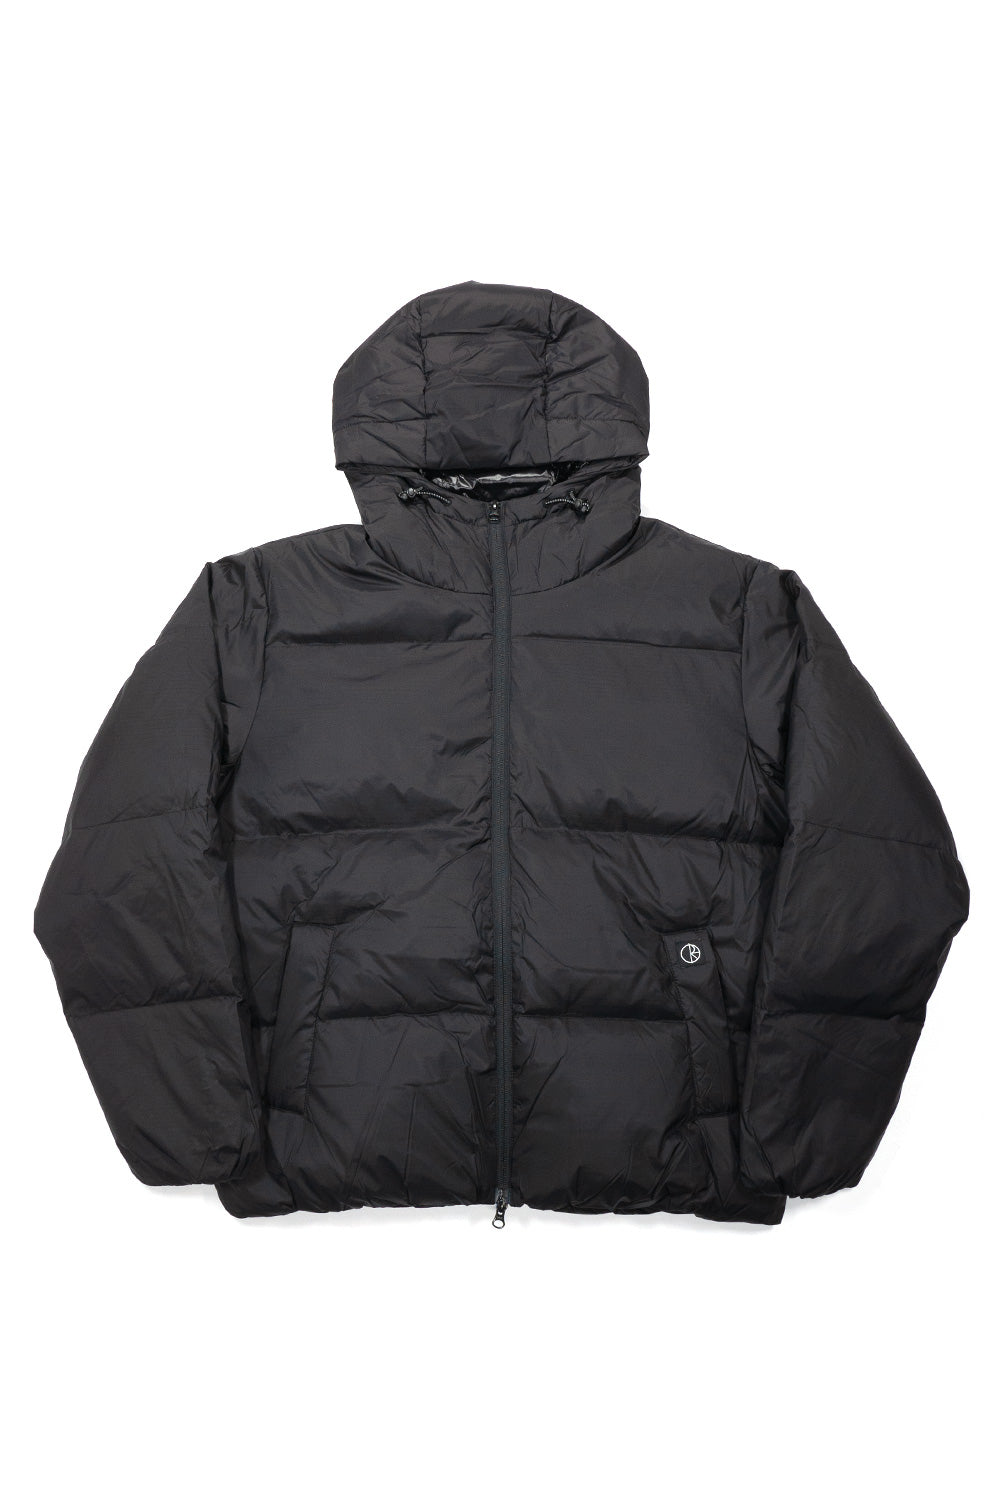 Polar Skate Co. Soft Puffer Jacket Black - BONKERS